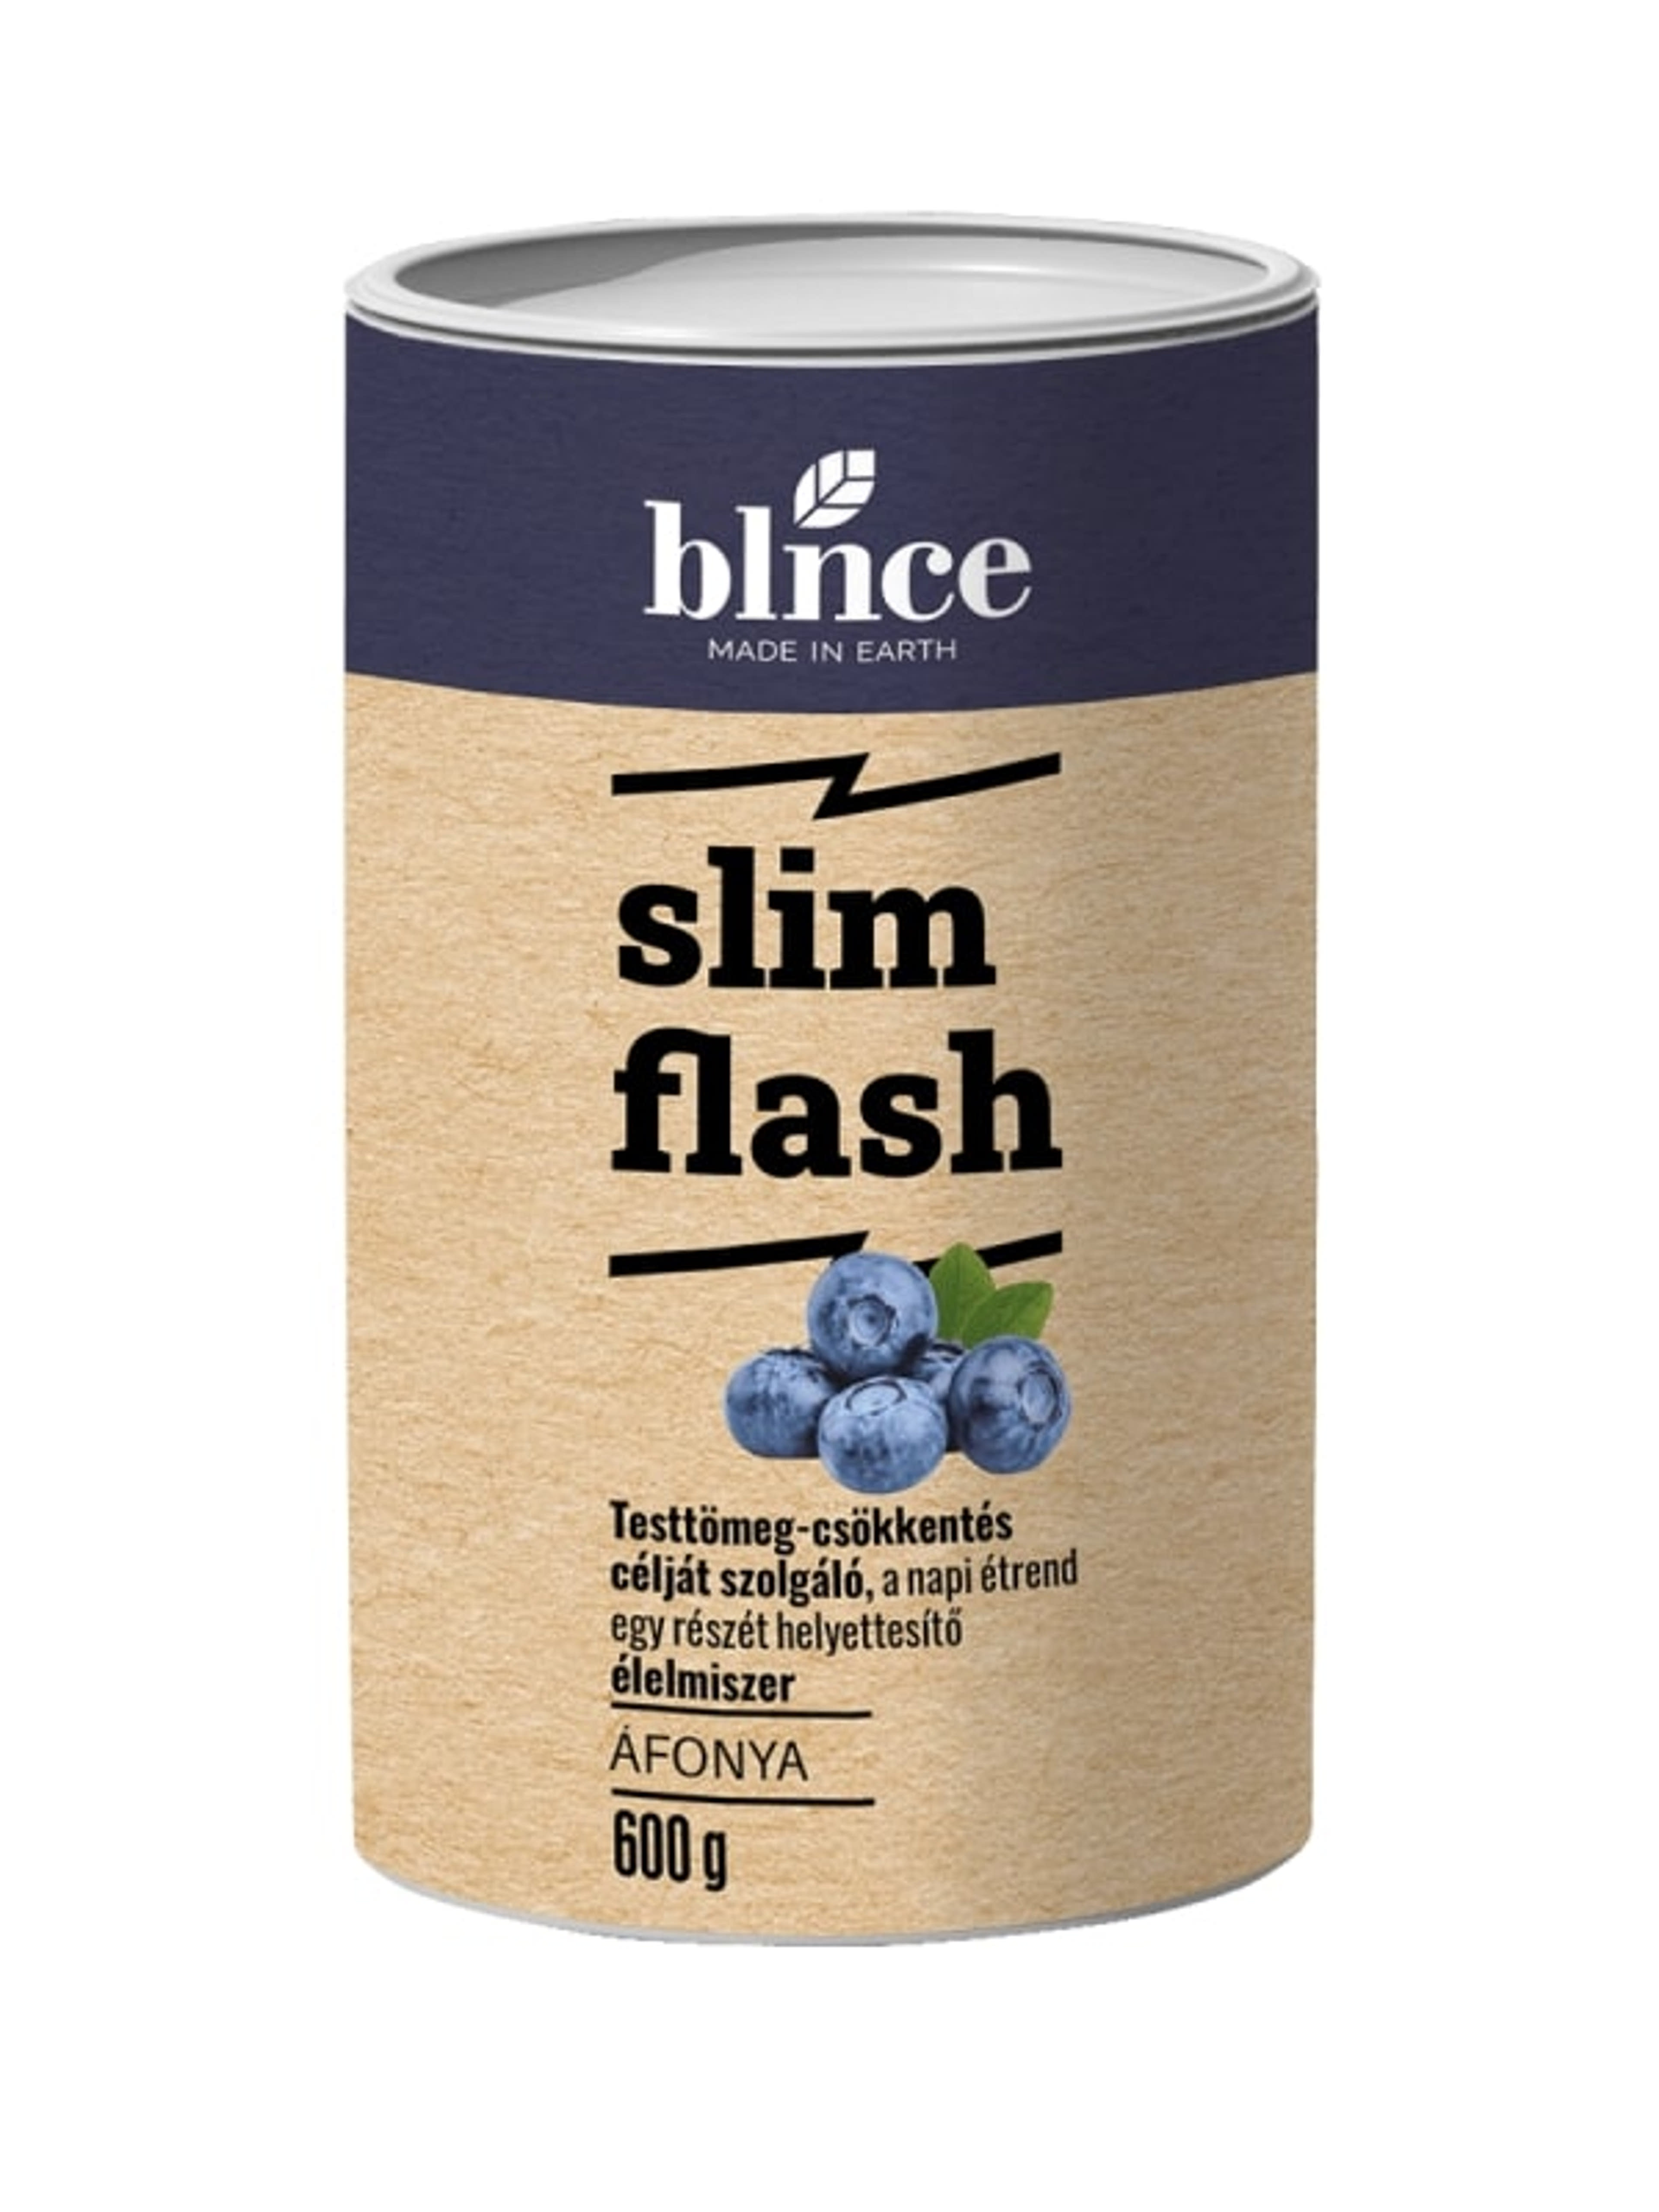 Blnce Active Slim Flash fogyókúrás italpor, áfonyás - 600 g